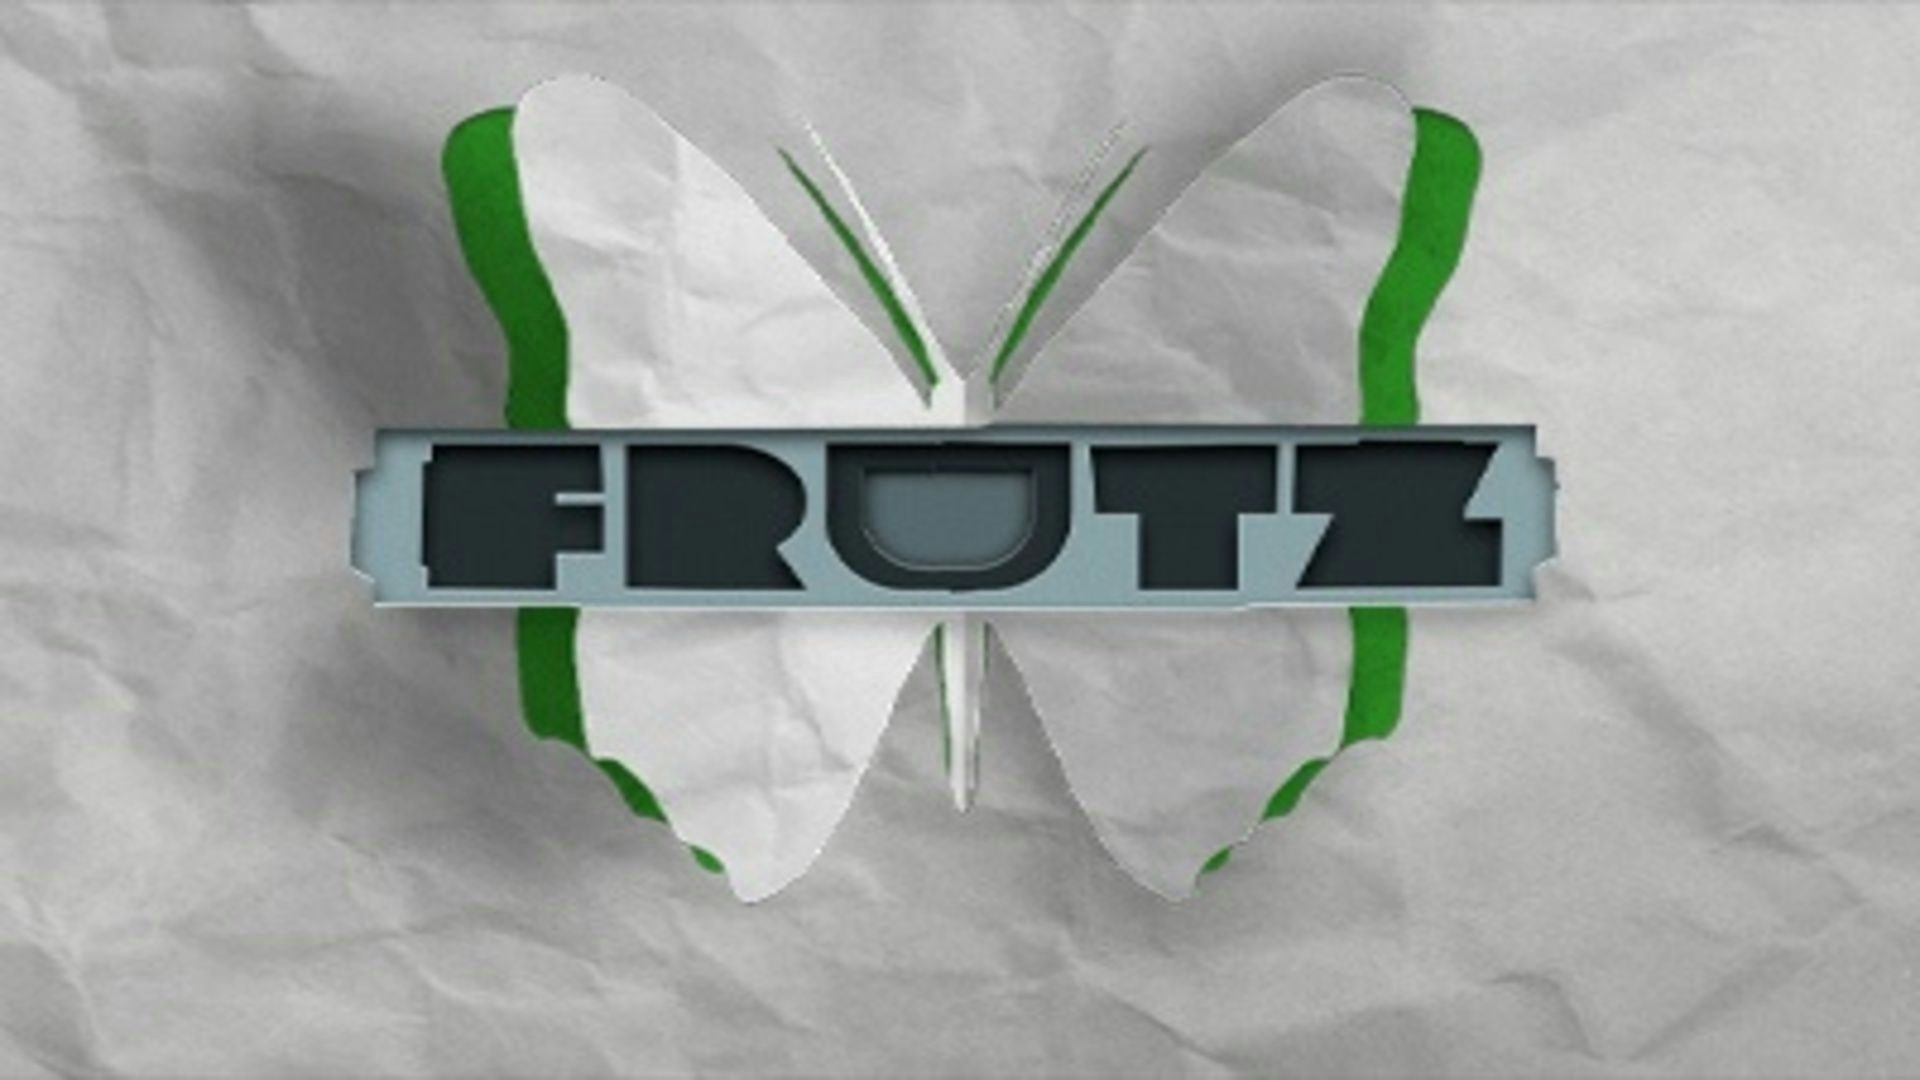 Frutz